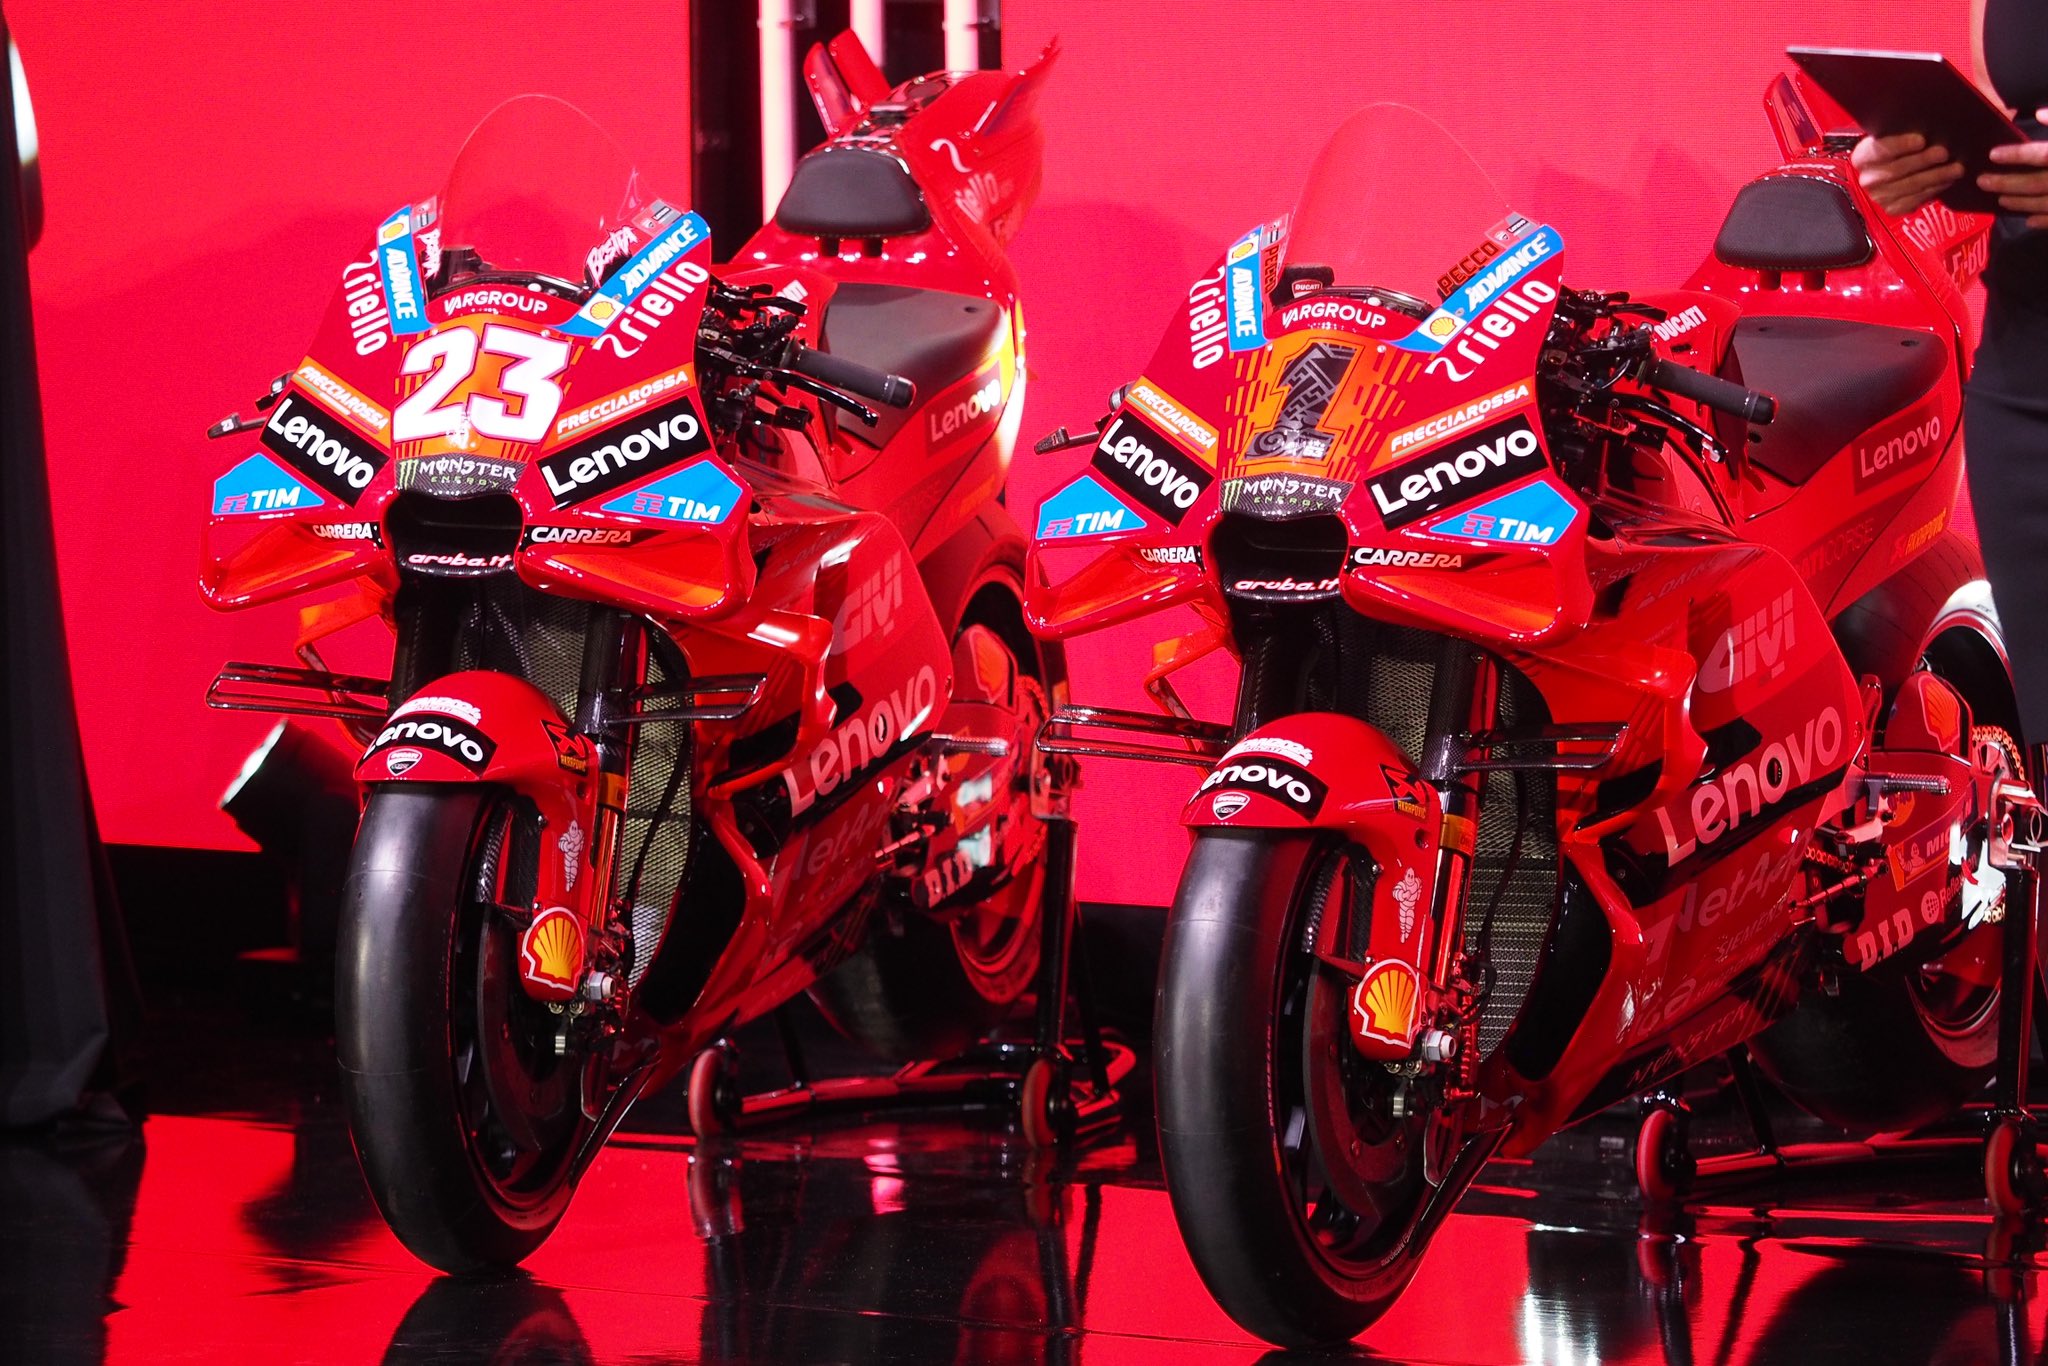 Peluncuran Tim Ducati Lenovo: Masih Dominan Merah, Pecco Bagnaia Tetap Pakai Nomor Start #1 di MotoGP 2024